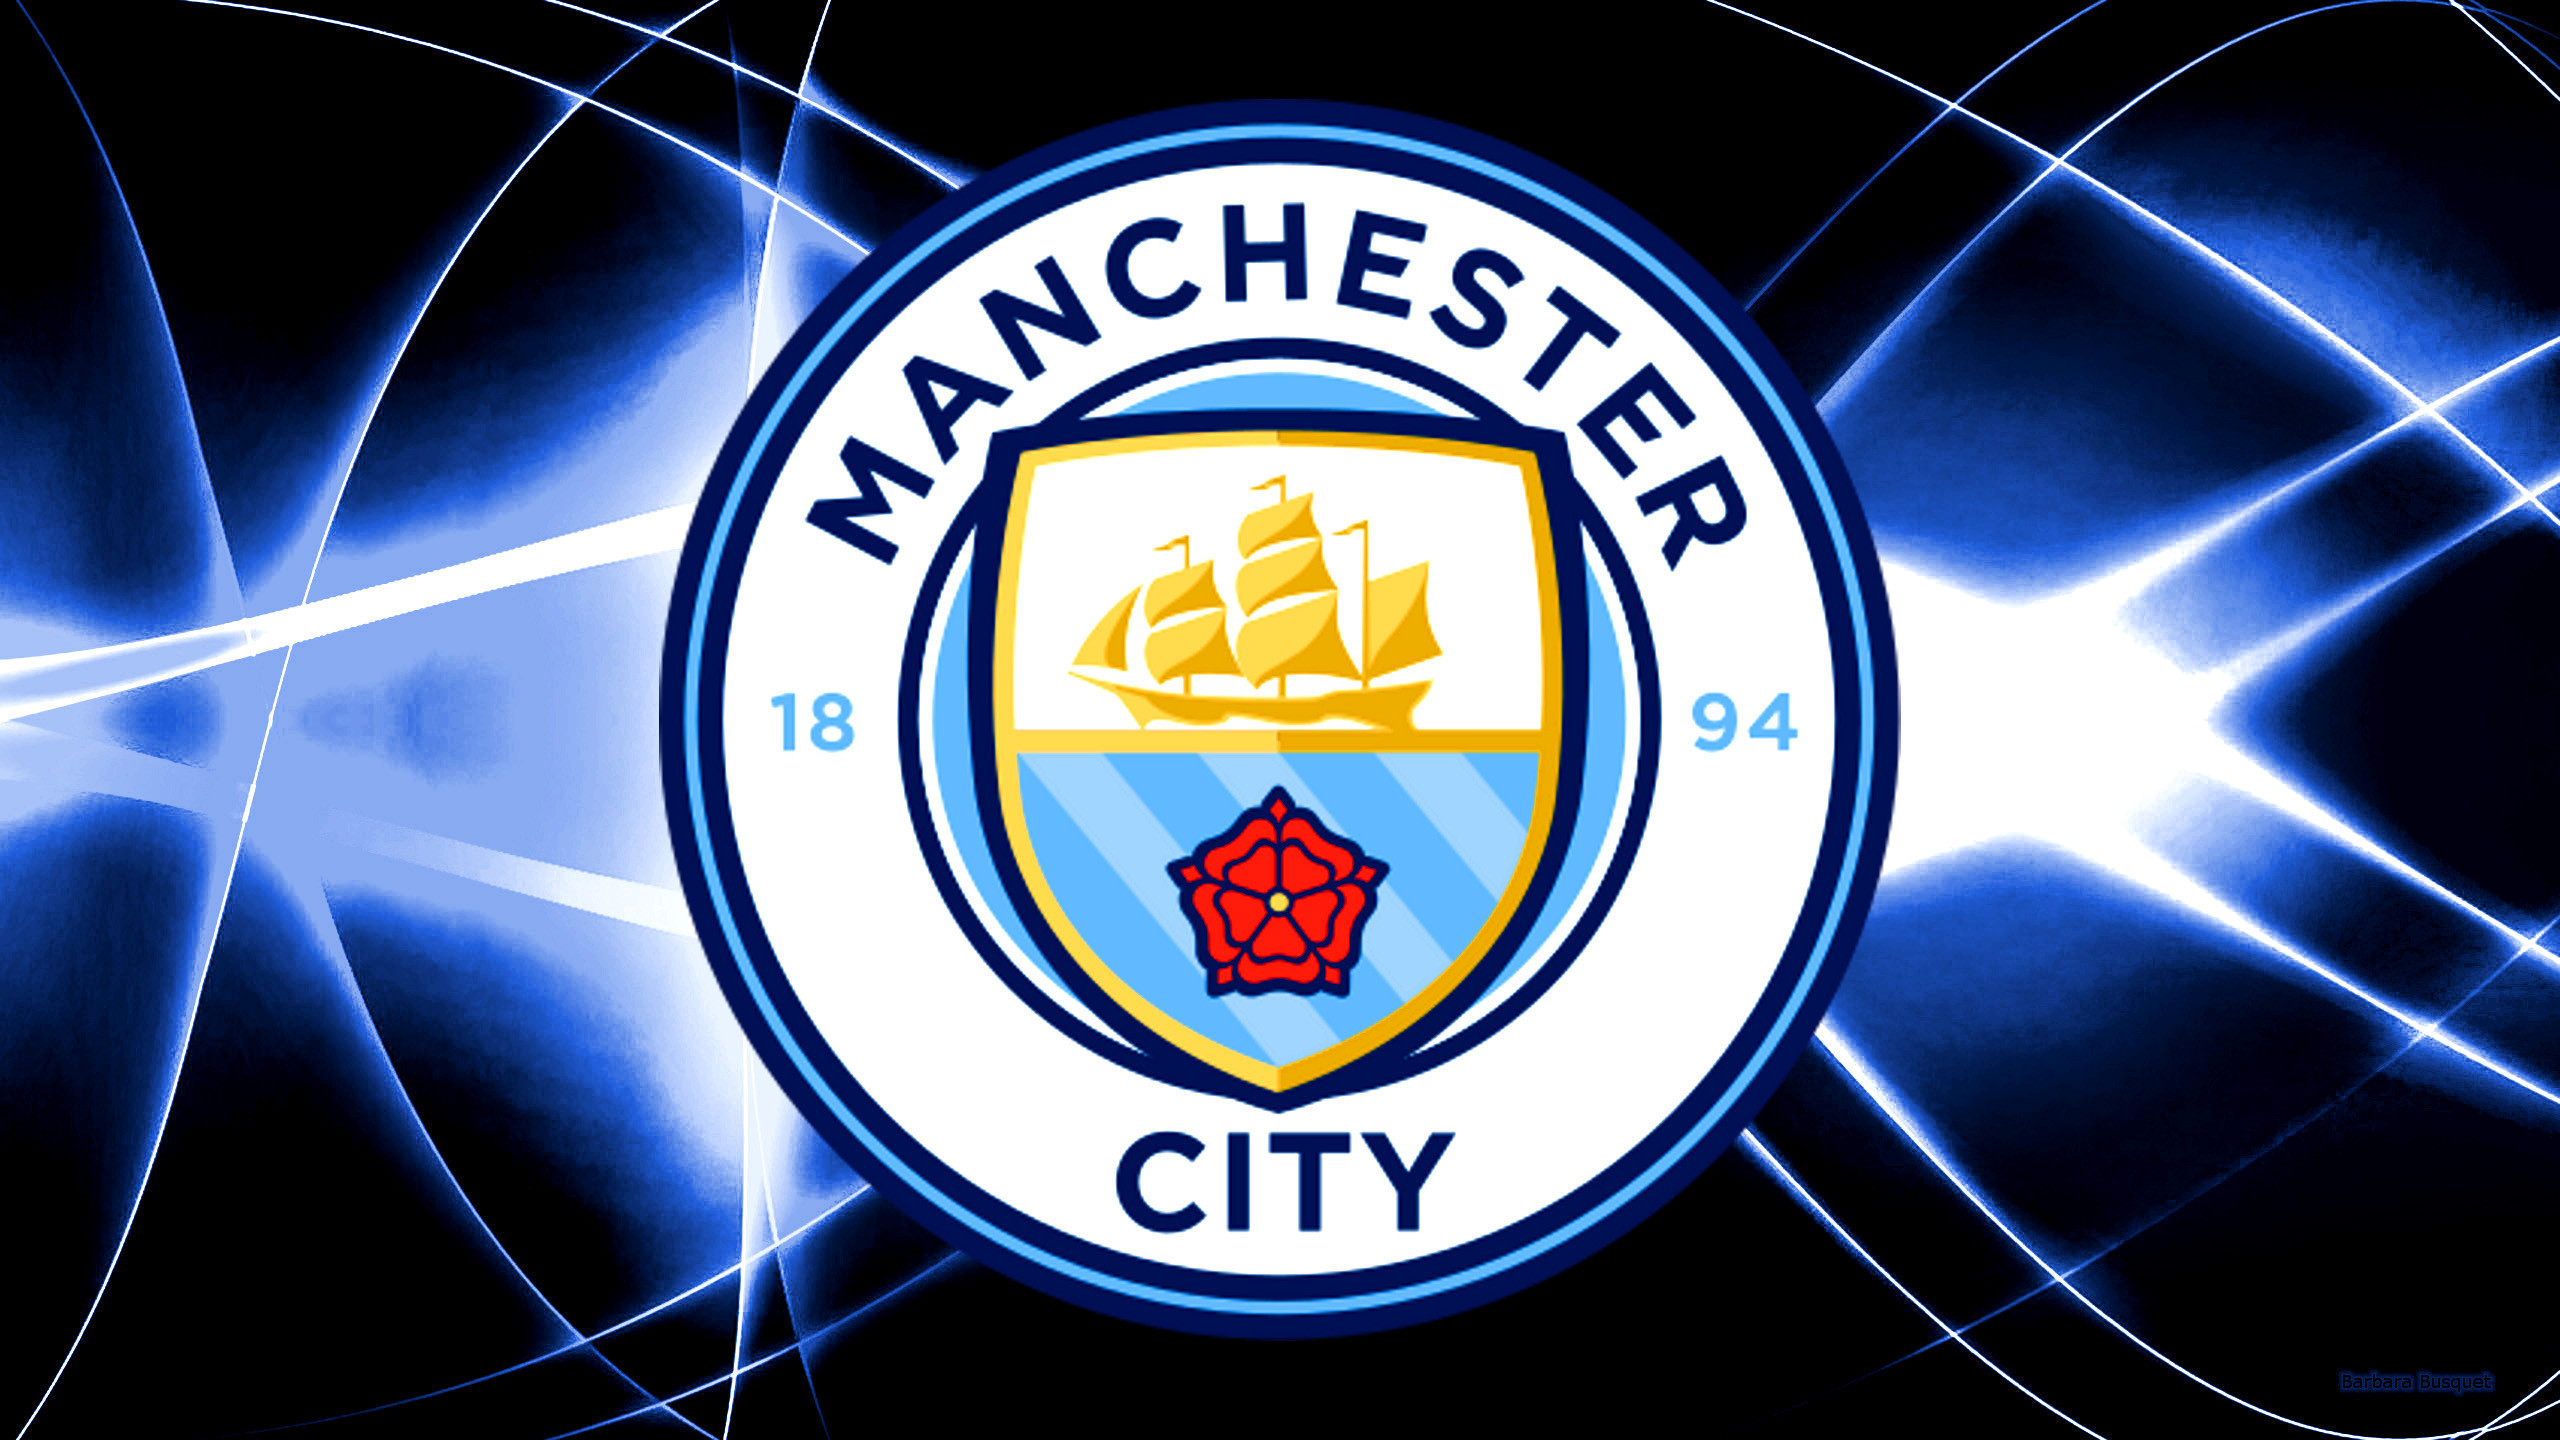 man city wallpaper,emblem,logo,symbol,flag,badge